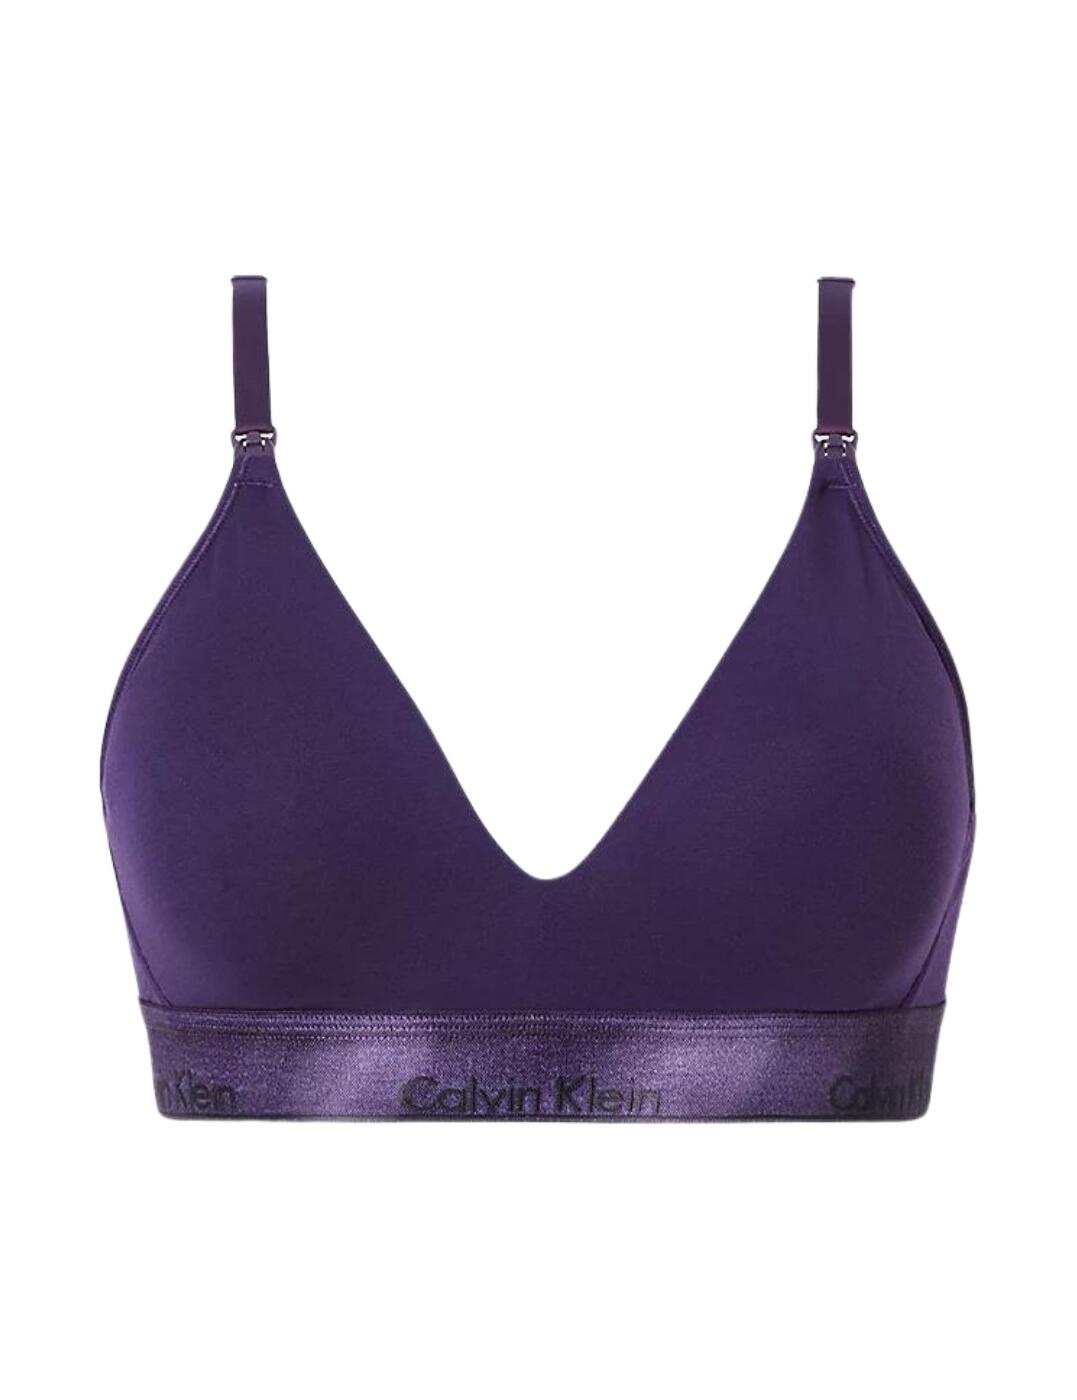 Calvin Klein Performance Medium support sports bra - amethyst/purple 